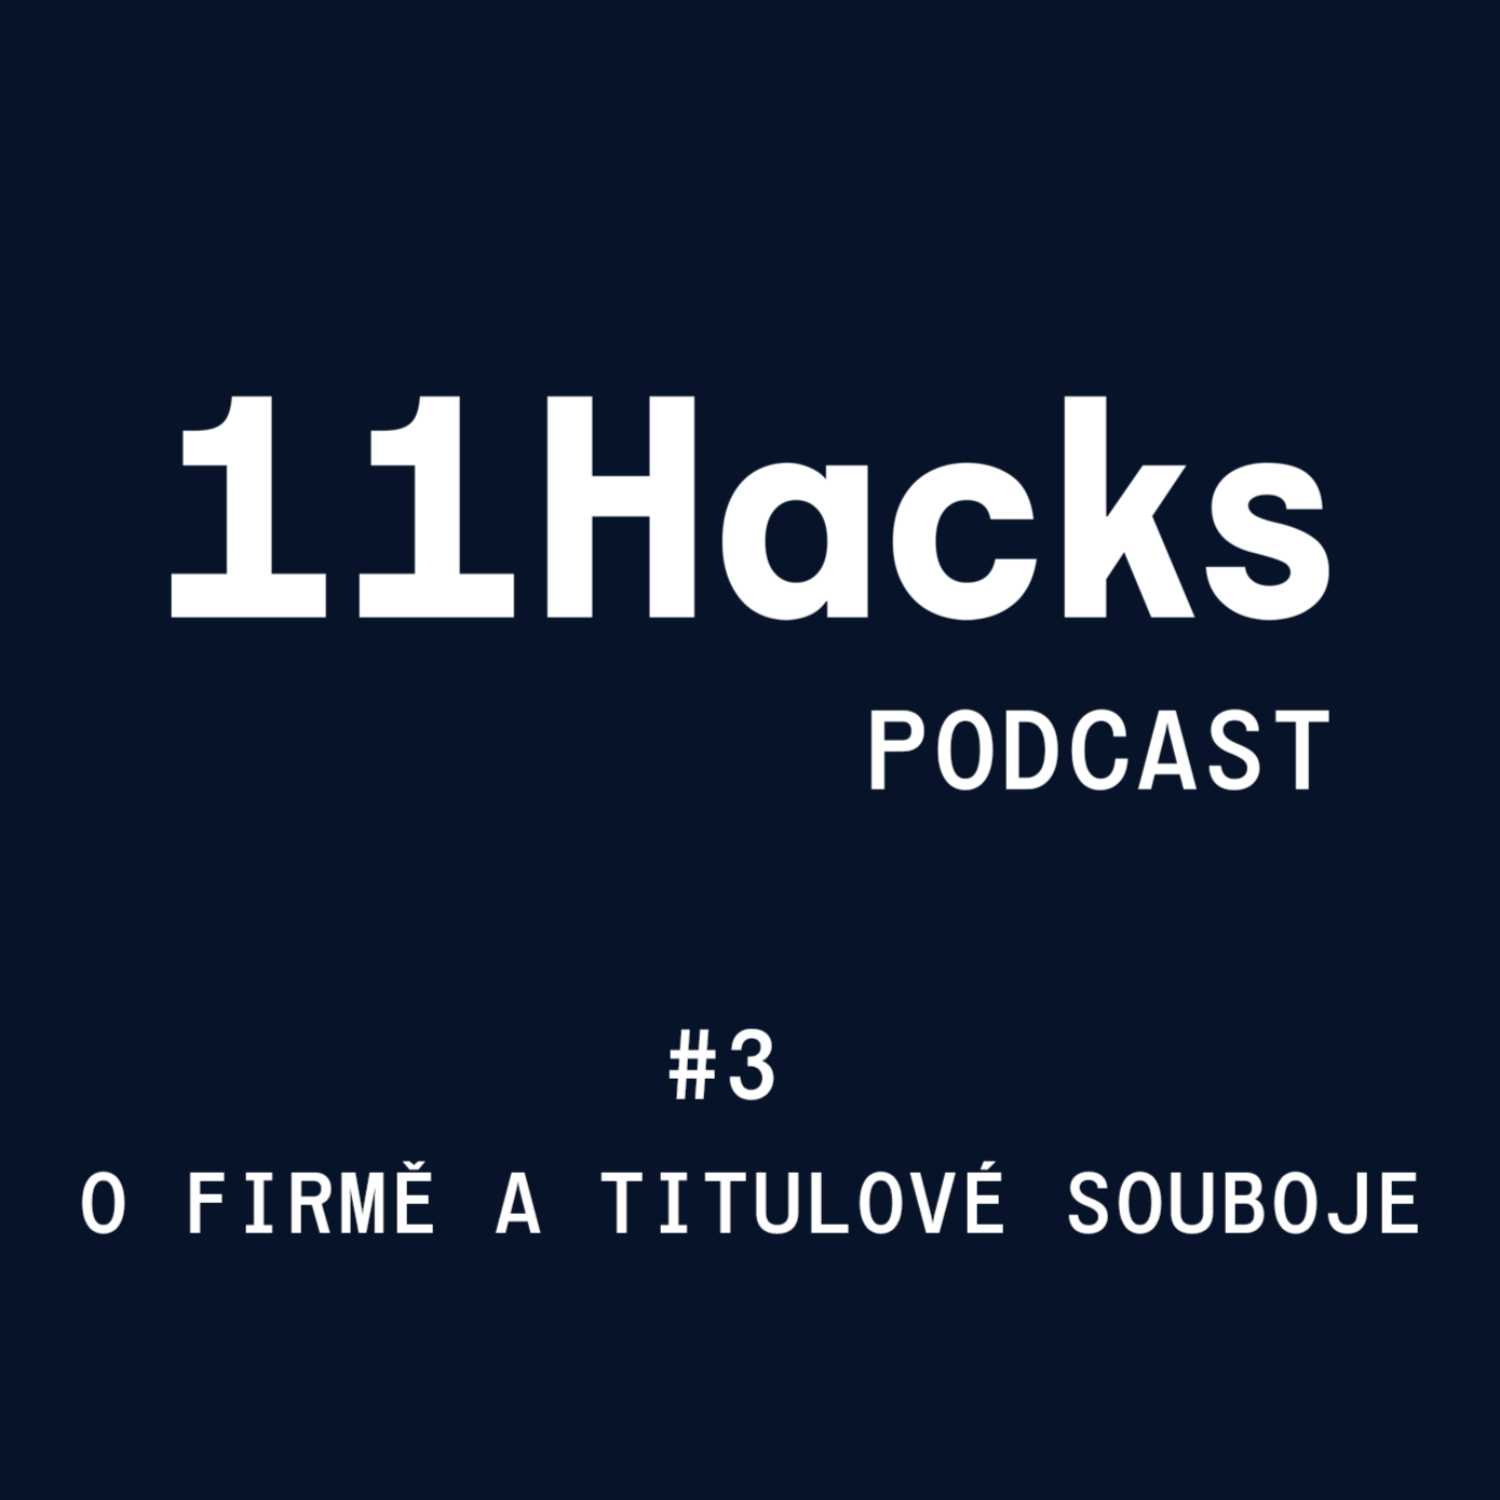 11Hacks Podcast #3 O firmě 11Hacks a titulové souboje  w/ Luděk Mádl